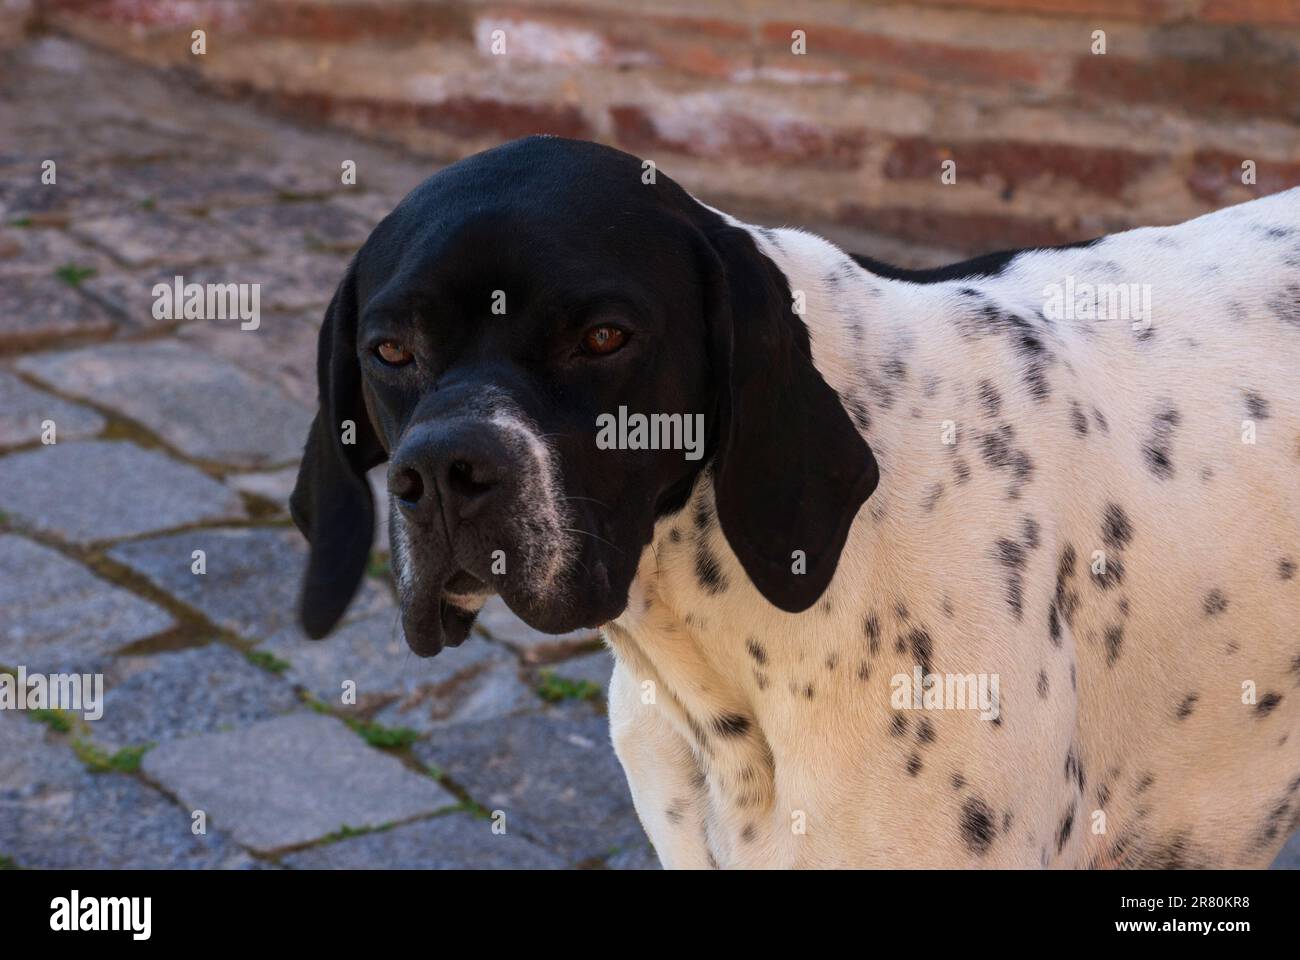 Gros plan portrait de chien noir sans domicile avec des yeux tristes à l'extérieur, regardant l'appareil photo Banque D'Images